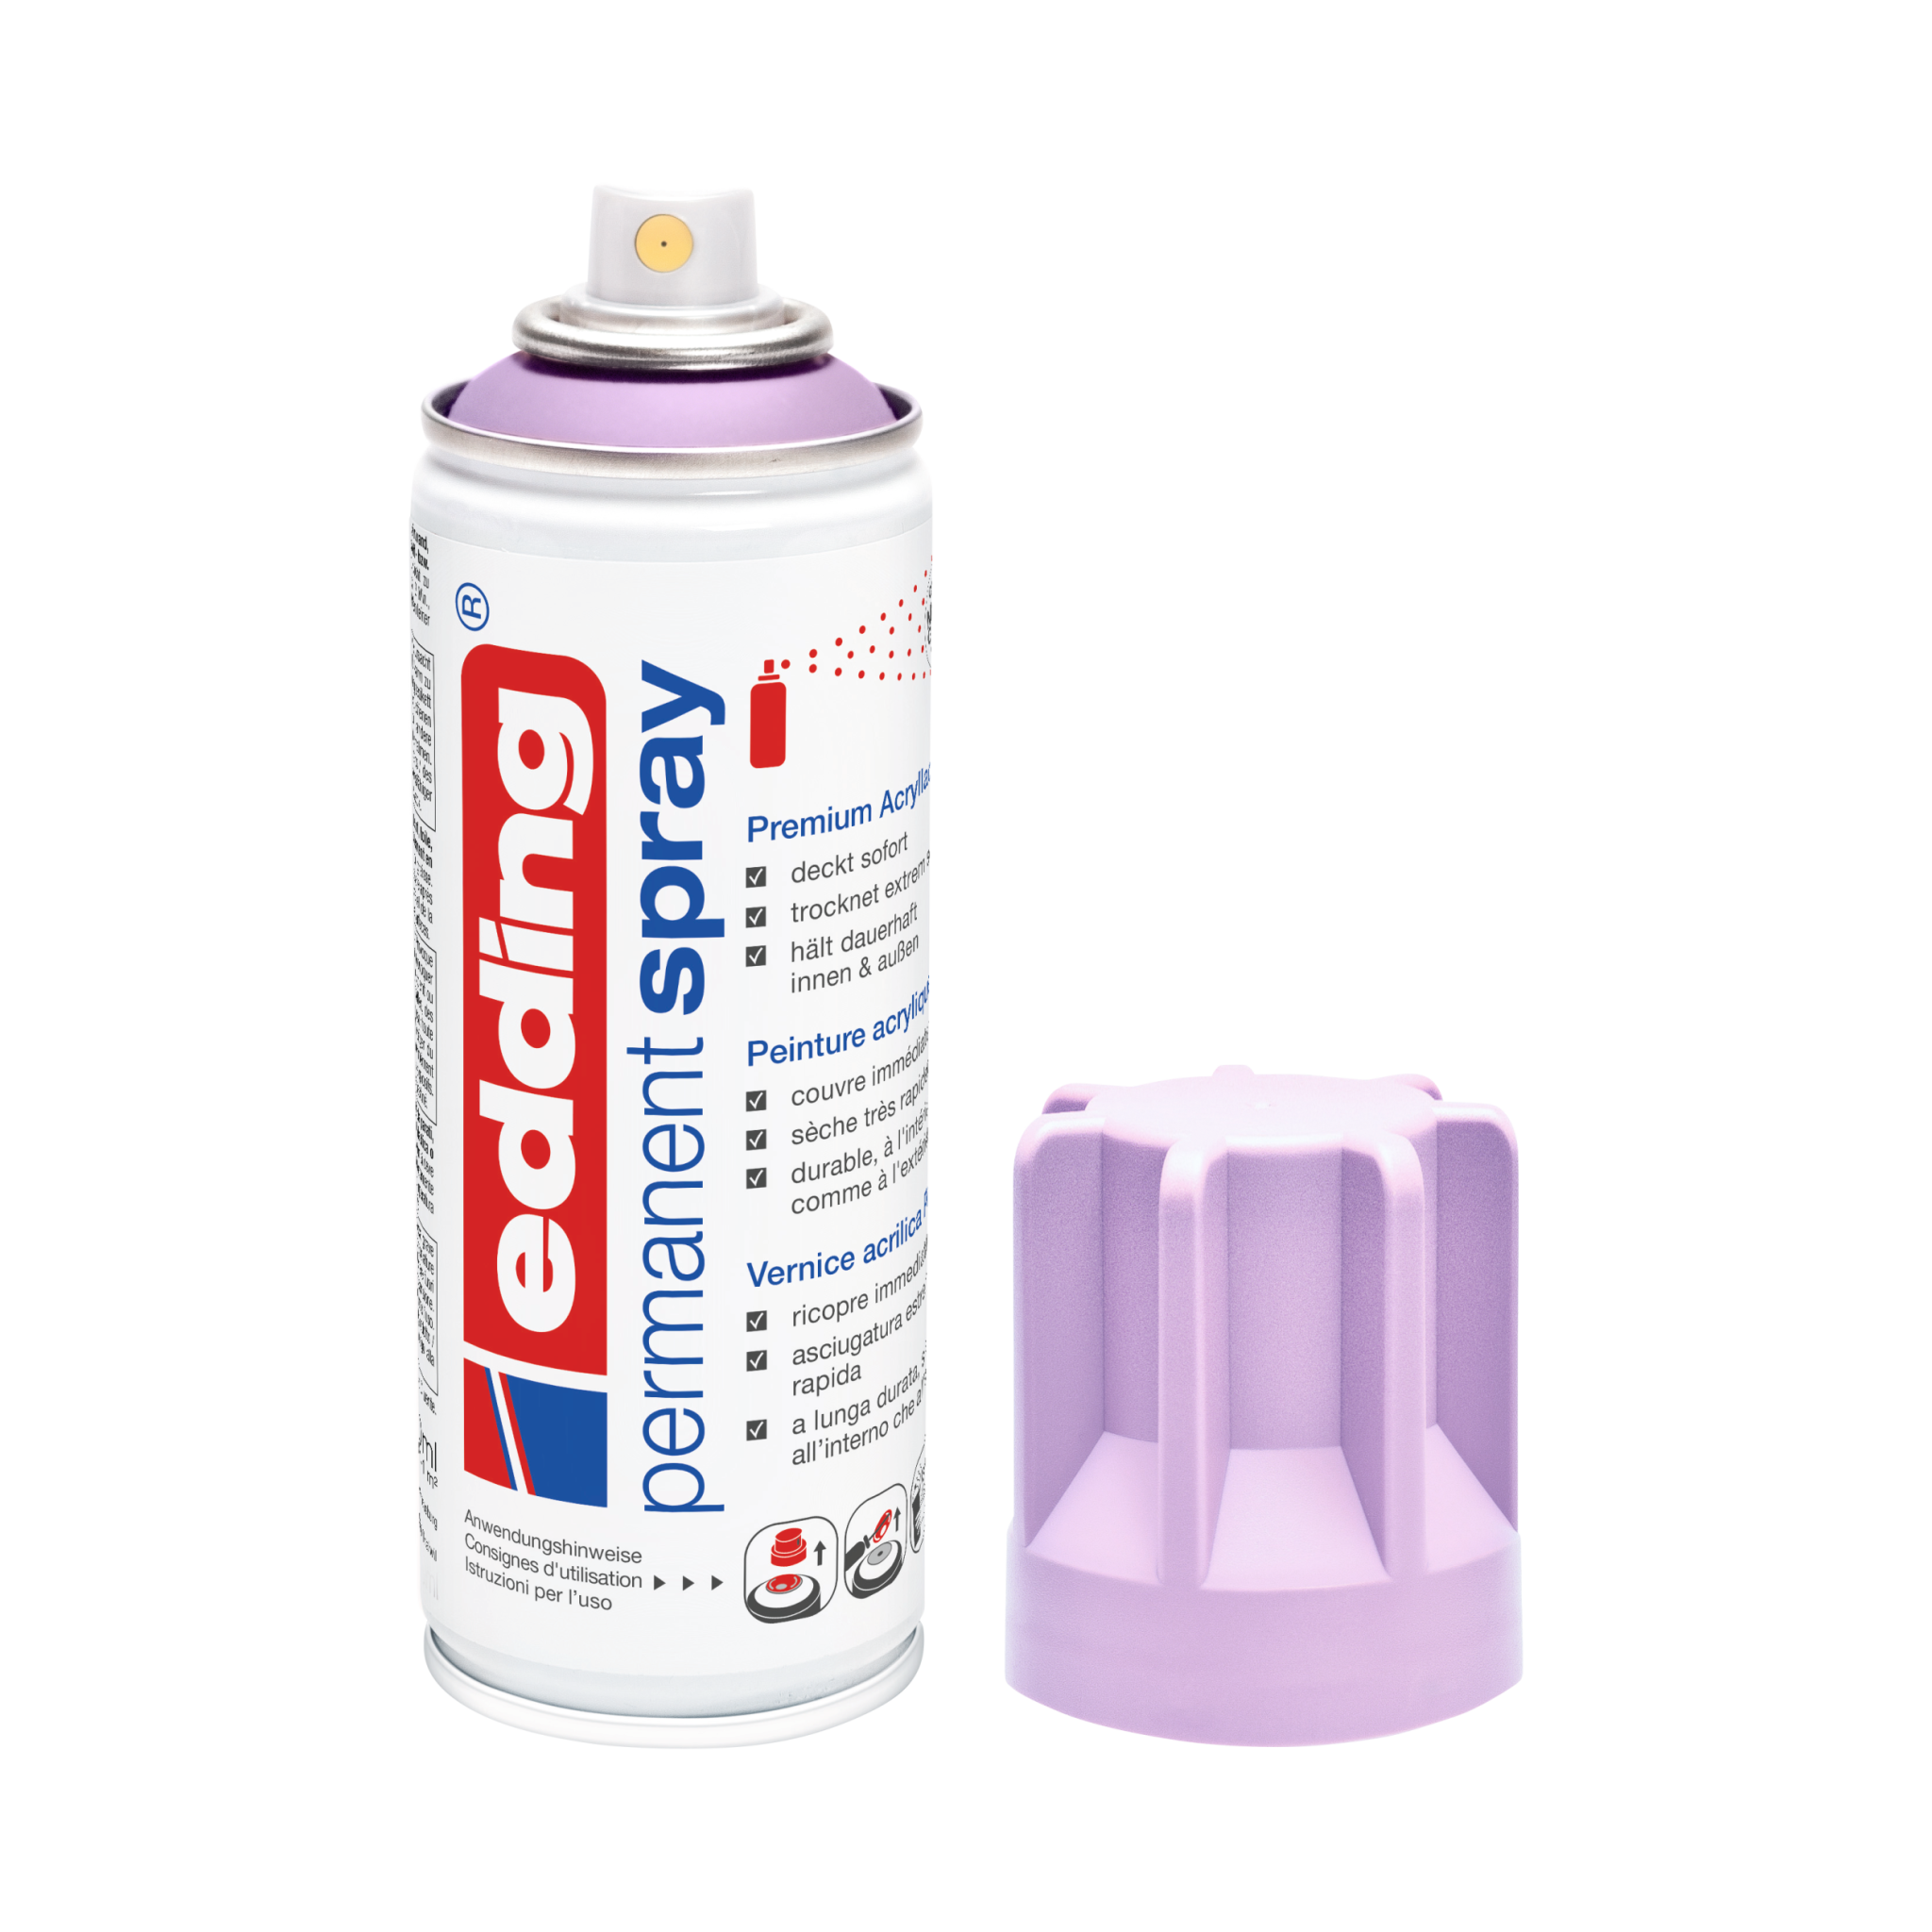 Eine Dose der Marke Edding 5200 Permanentspray Acryllack Pastell & sanfte Farben in Weiß, von der die Schutzkappe abgenommen und daneben platziert wurde.